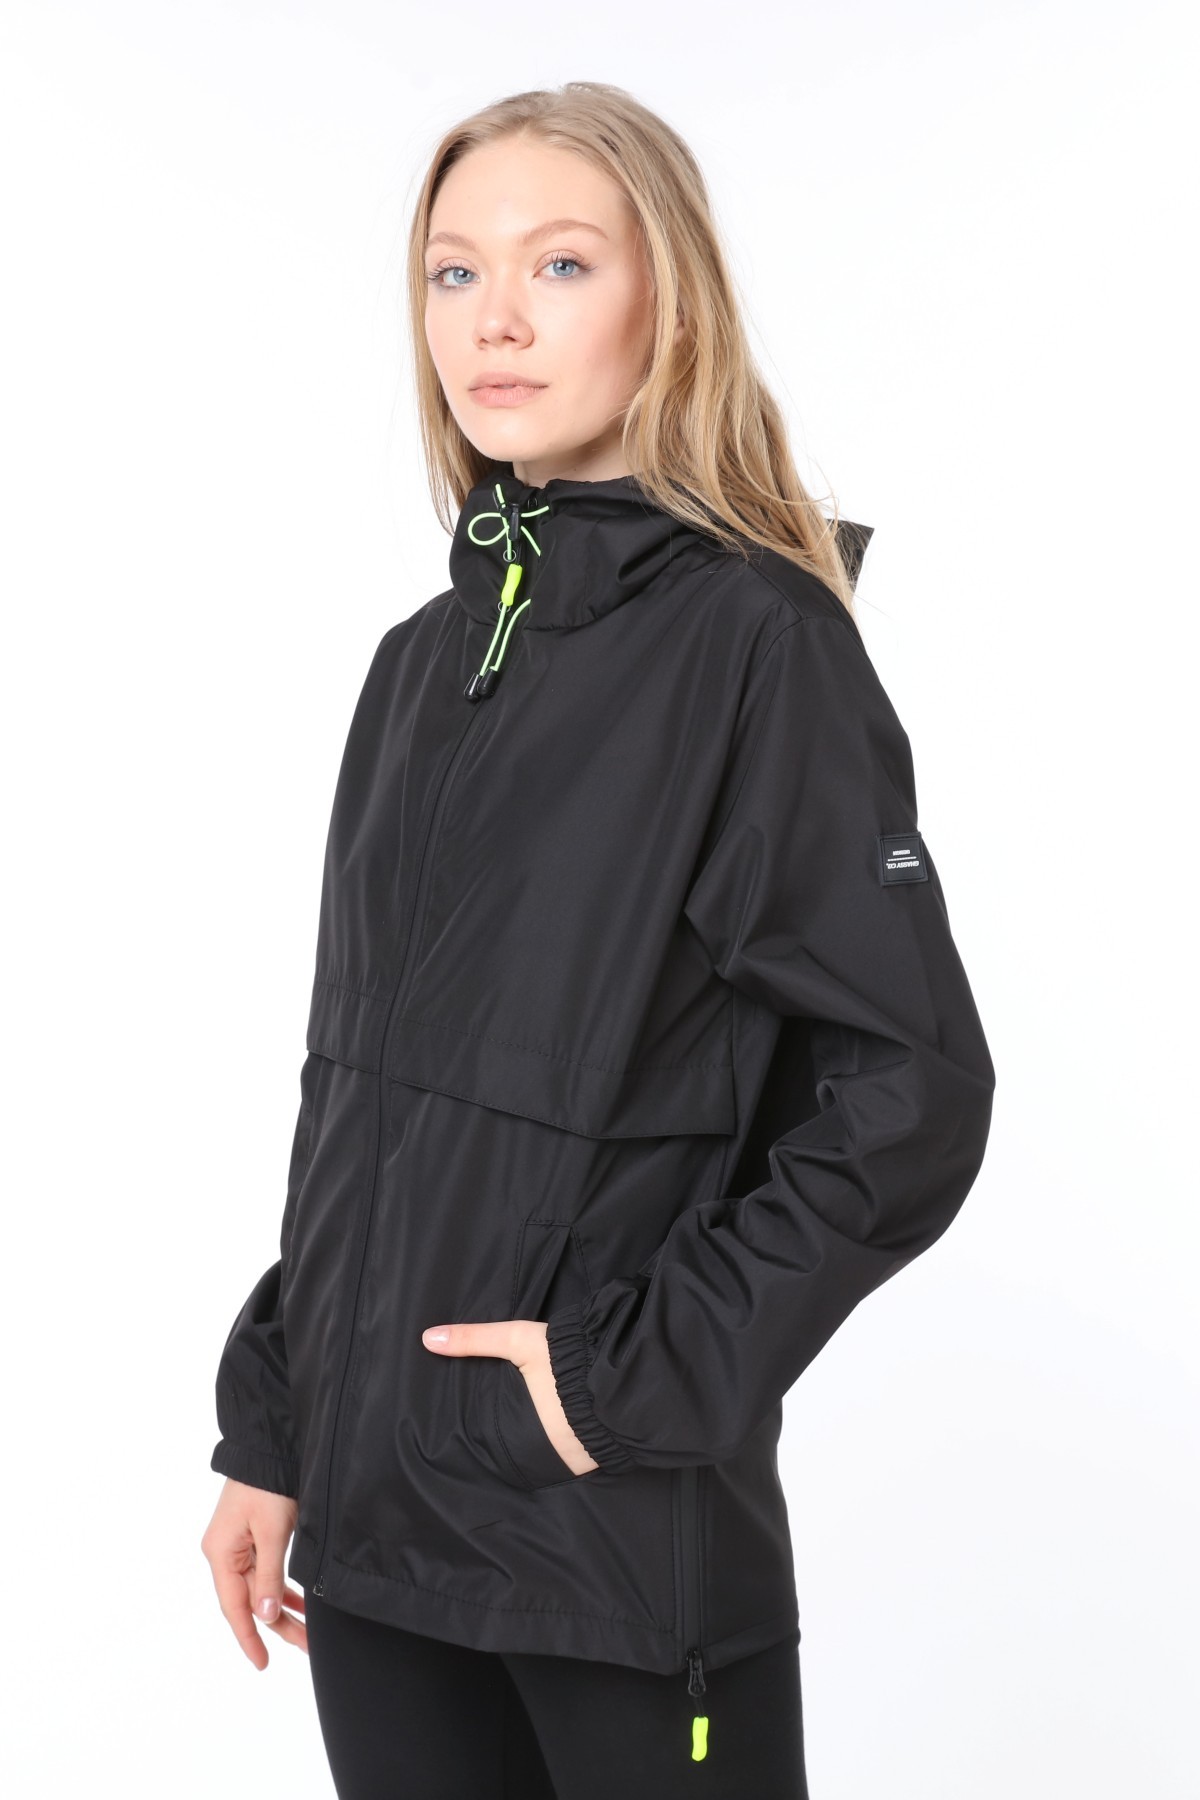 Ghassy Co.Kadın  Rüzgarlık/Yağmurluk Yırtmaç Detaylı Mevsimlik Siyah Spor Ceket - SİYAH